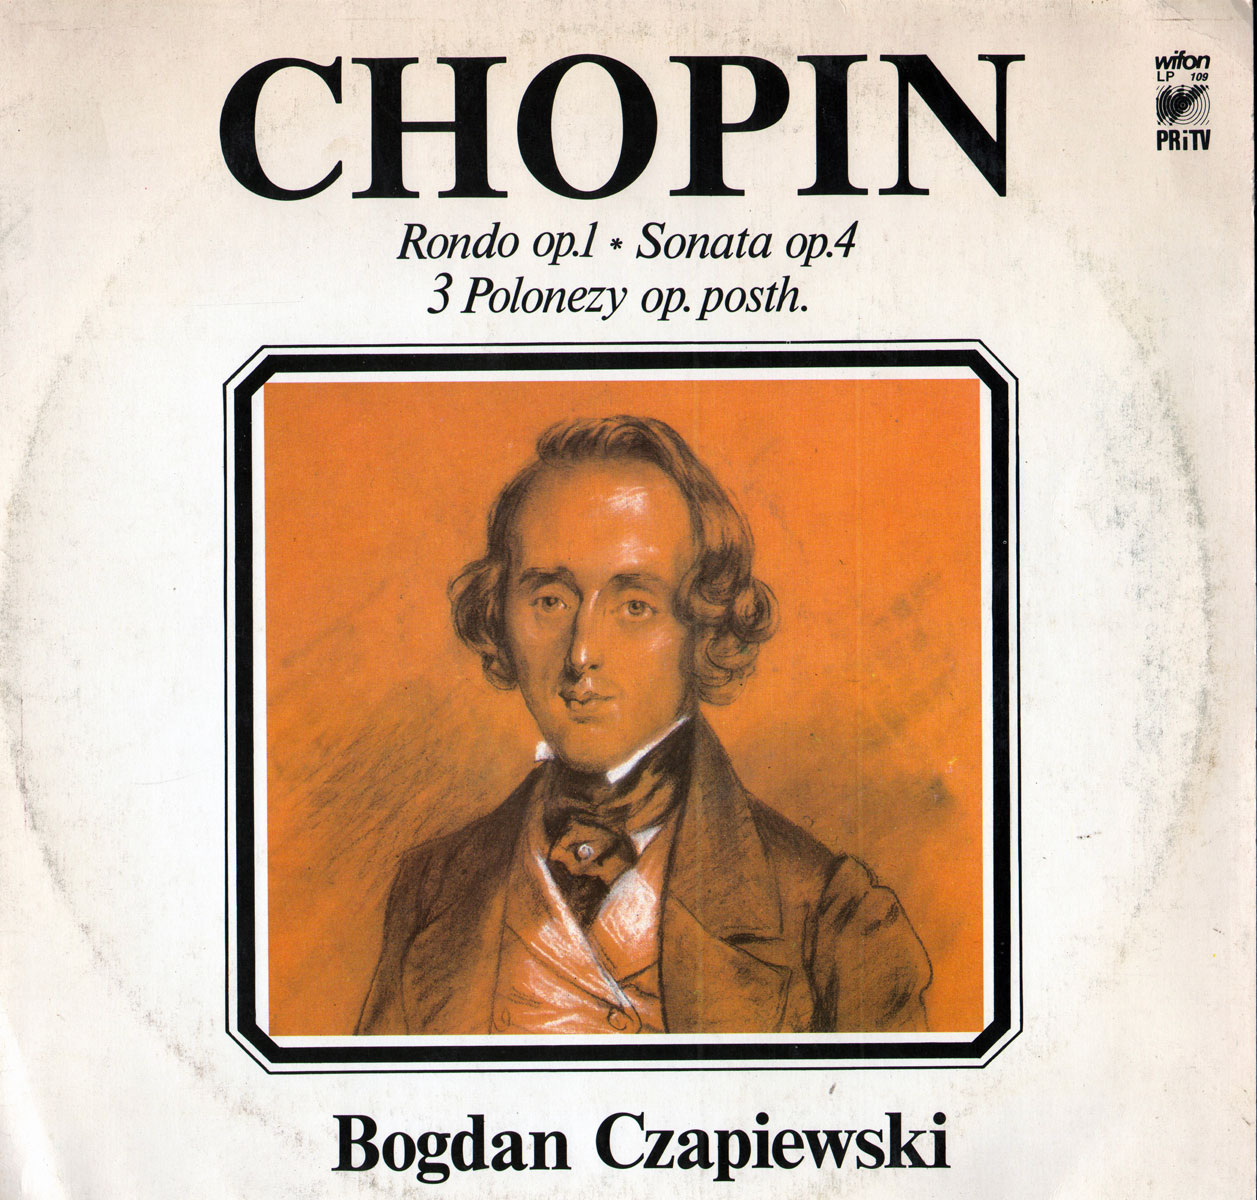 Bogdan Czapiewski -  Chopin [по заказу польской фирмы WIFON, LP 109]